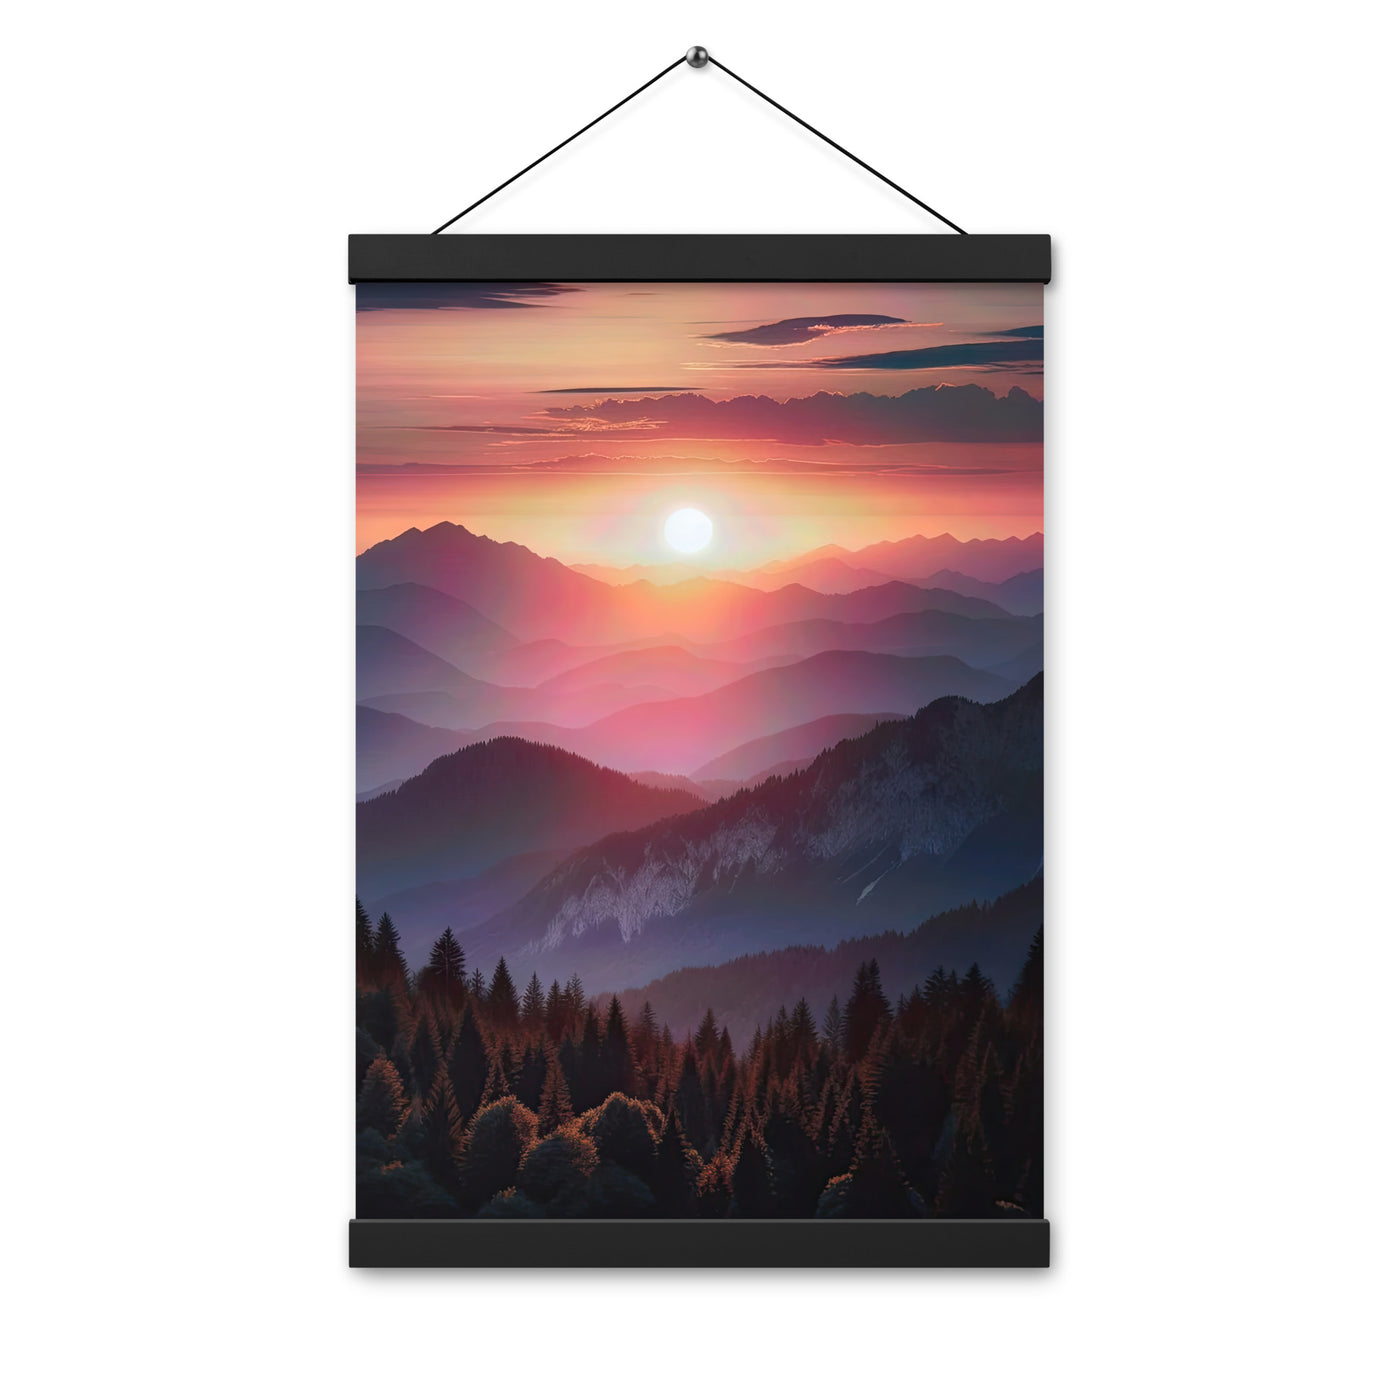 Foto der Alpenwildnis beim Sonnenuntergang, Himmel in warmen Orange-Tönen - Premium Poster mit Aufhängung berge xxx yyy zzz 30.5 x 45.7 cm